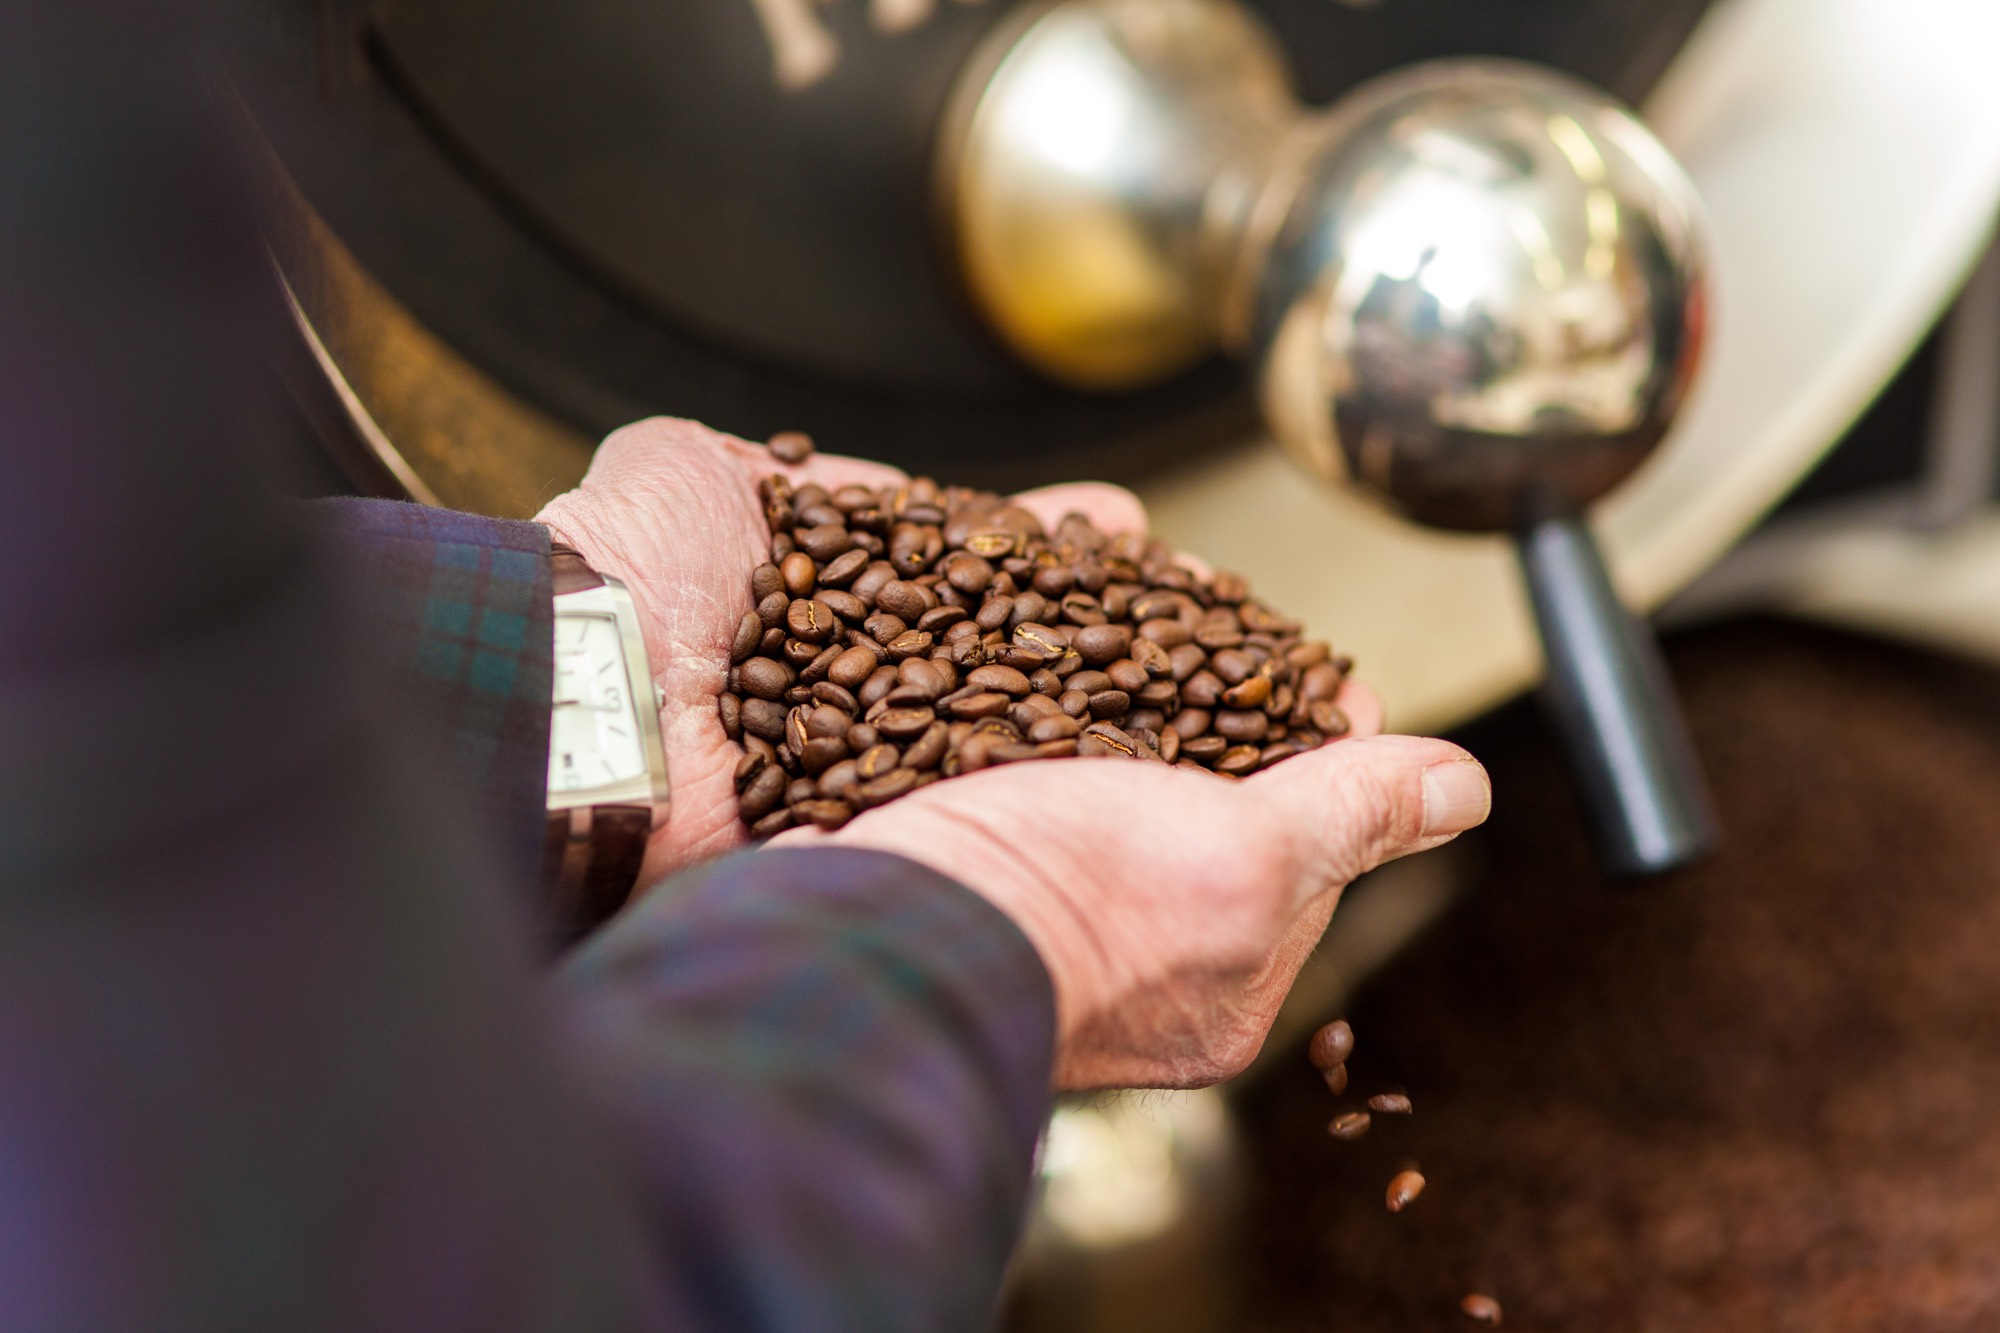 HARING KAFFEE - Handverlesene Kaffeesorten und schonende Röstung